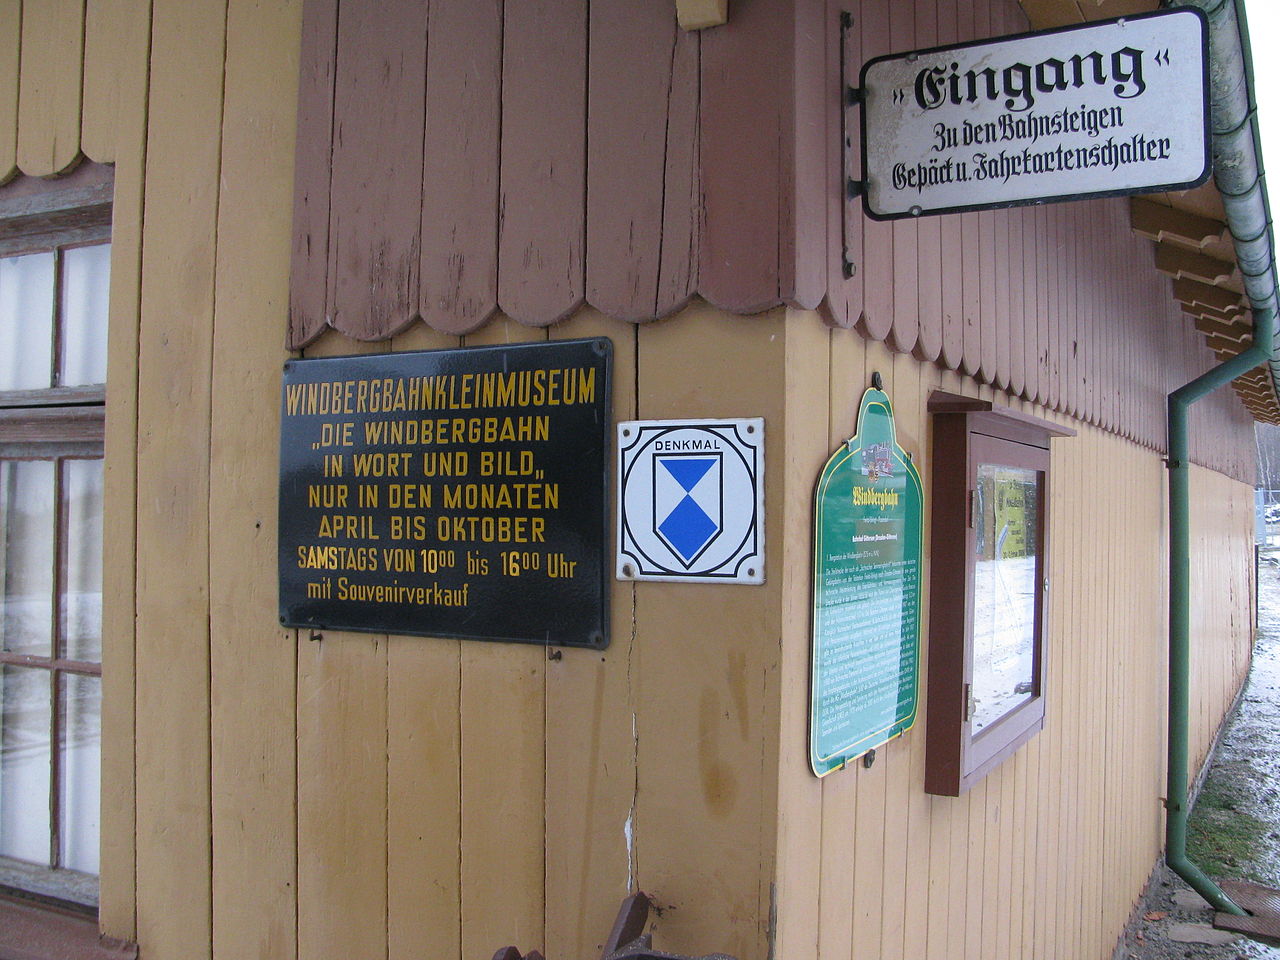 Bild Museum zur Geschichte der Windbergbahn